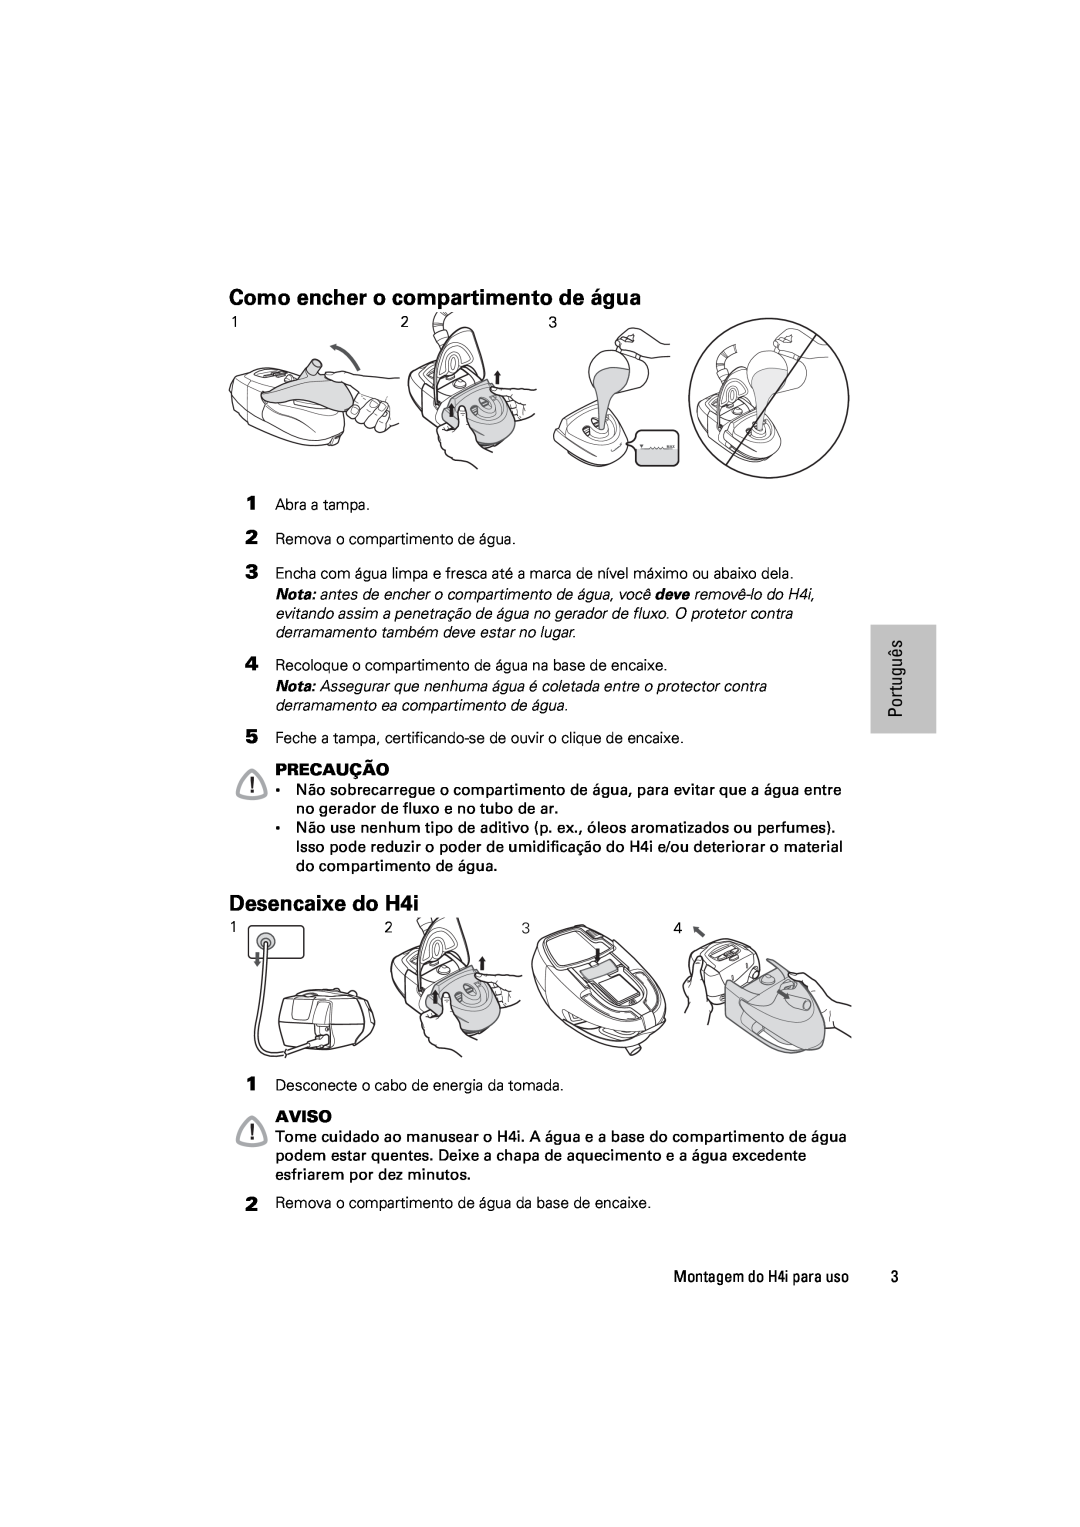 ResMed 248671/1 manual Como encher o compartimento de água, Desencaixe do H4i, Português, Precaução, Aviso 